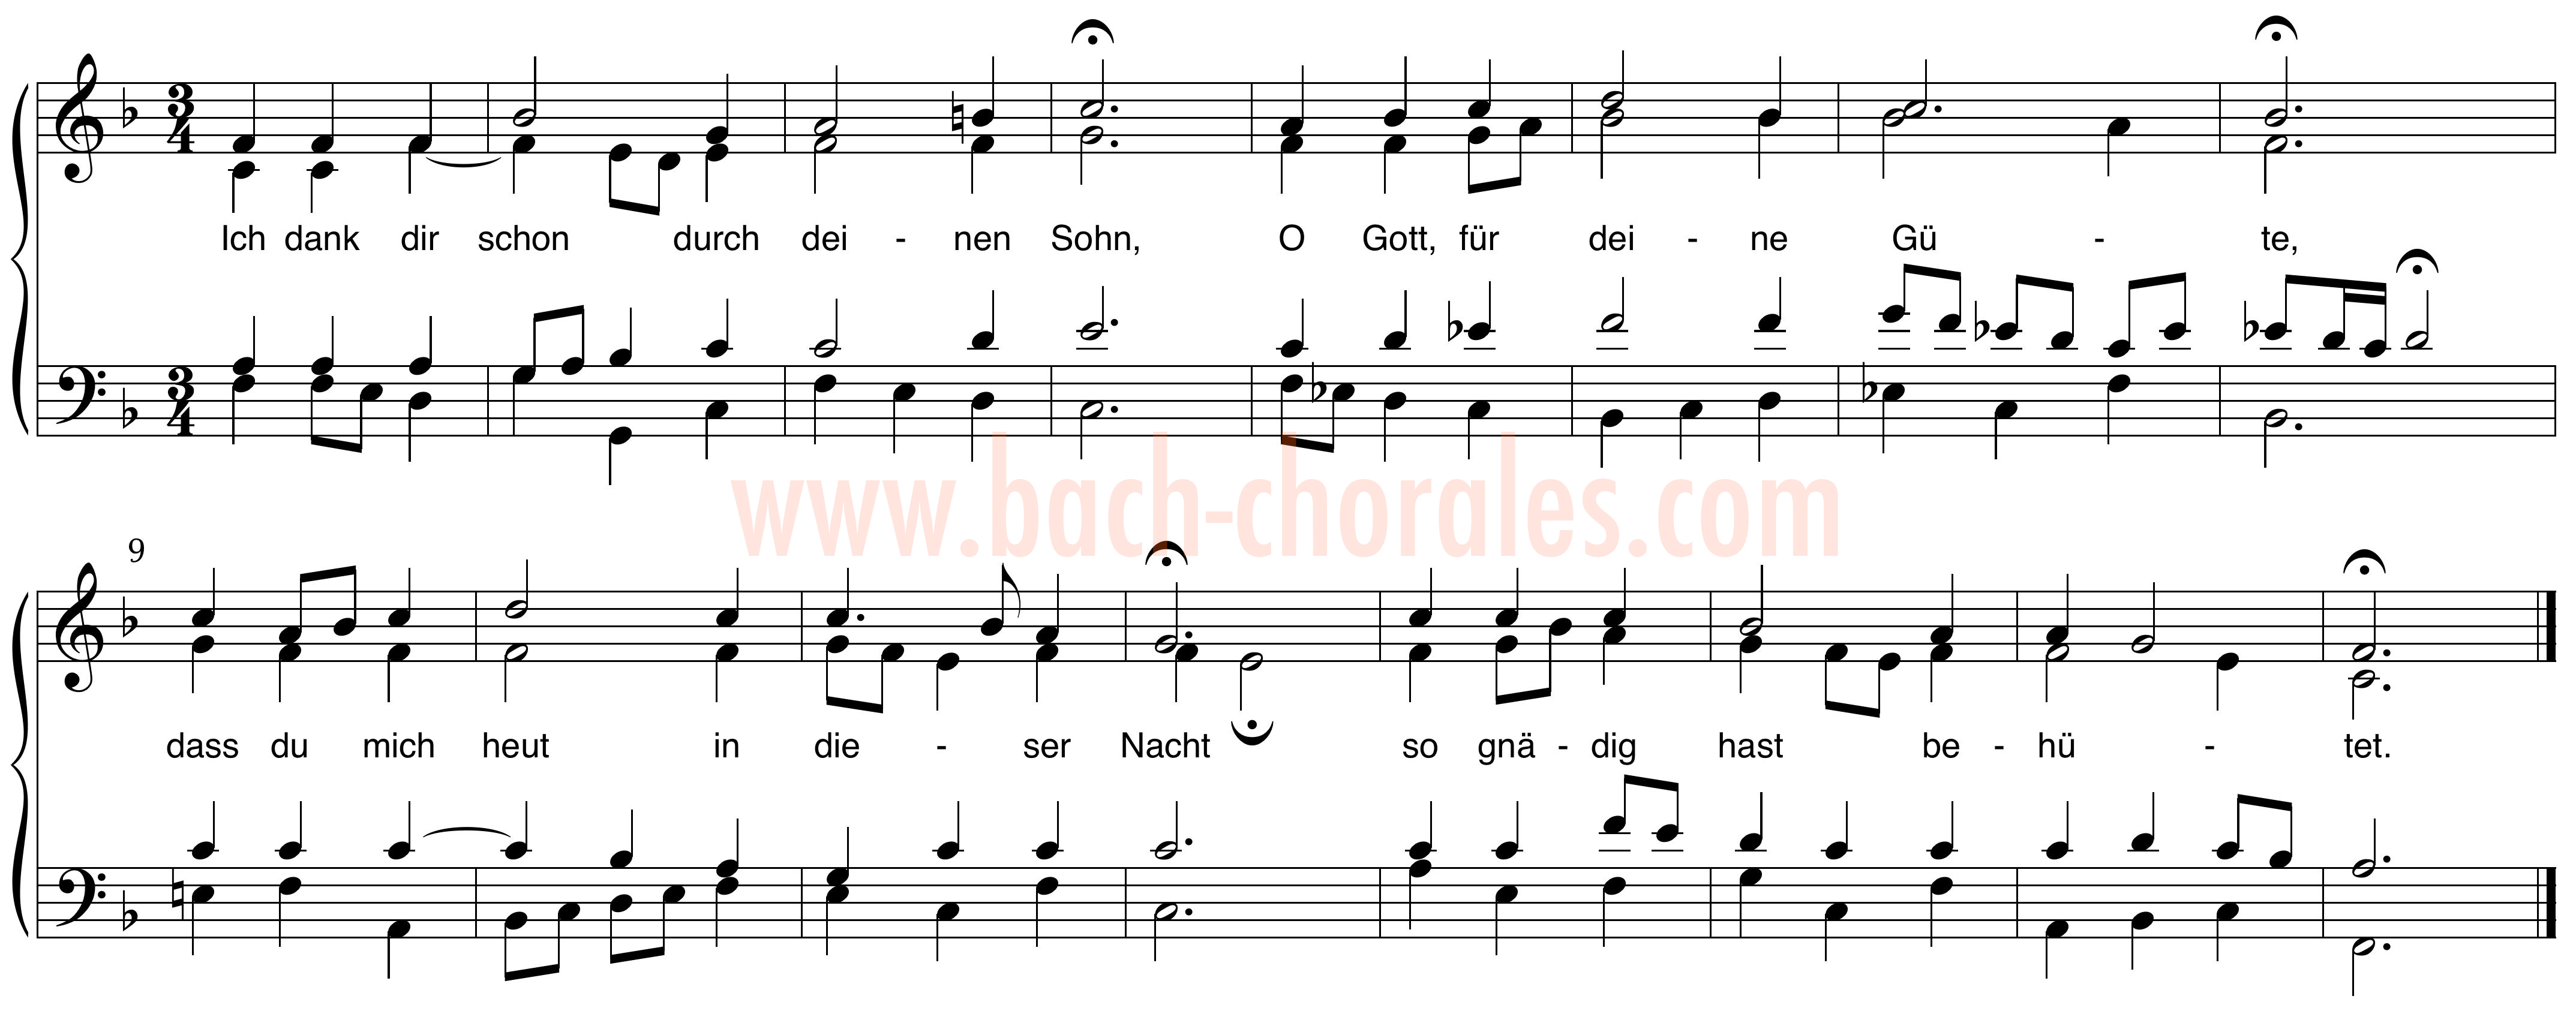 notenbeeld BWV 349 op https://www.bach-chorales.com/